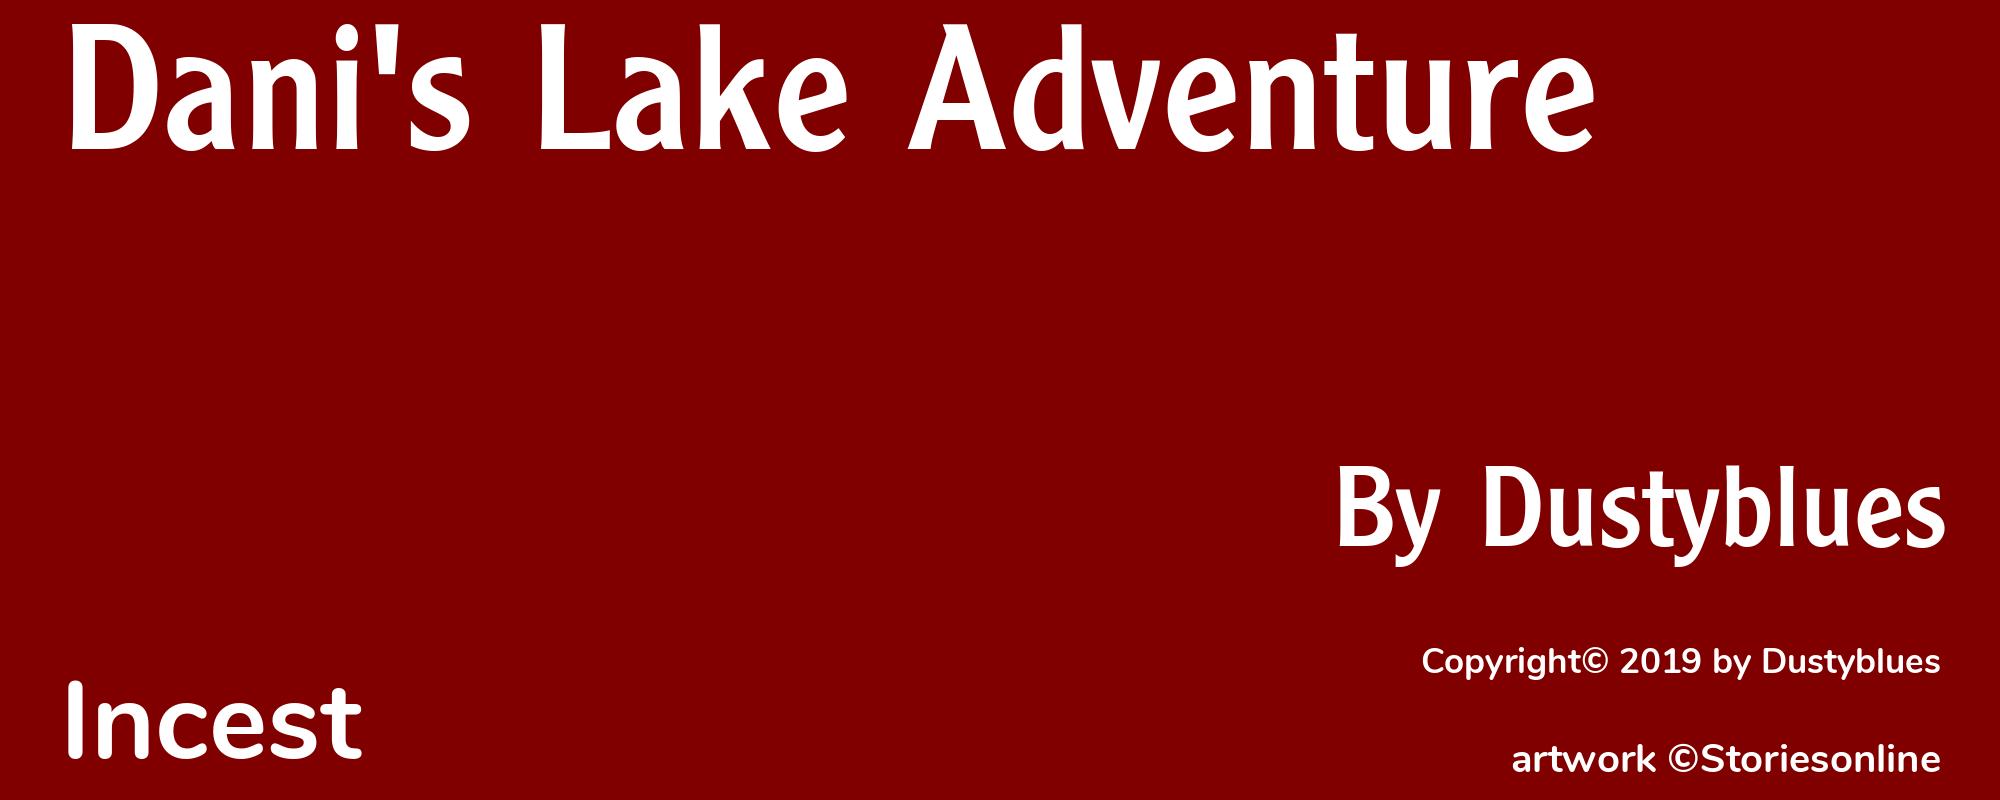 Dani's Lake Adventure - Cover